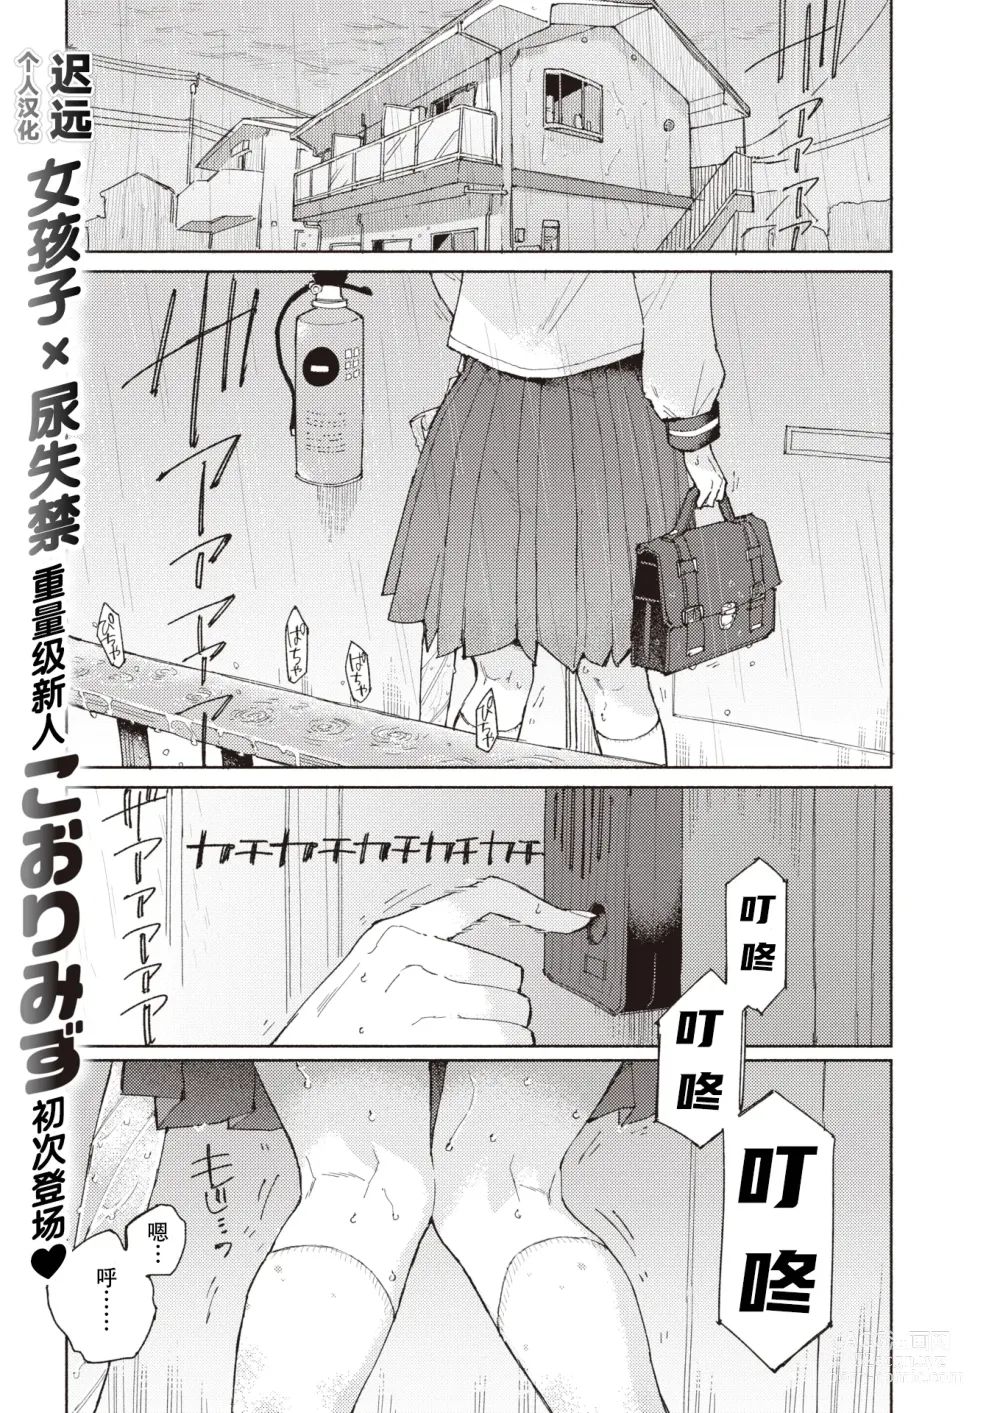 Page 1 of manga 标记